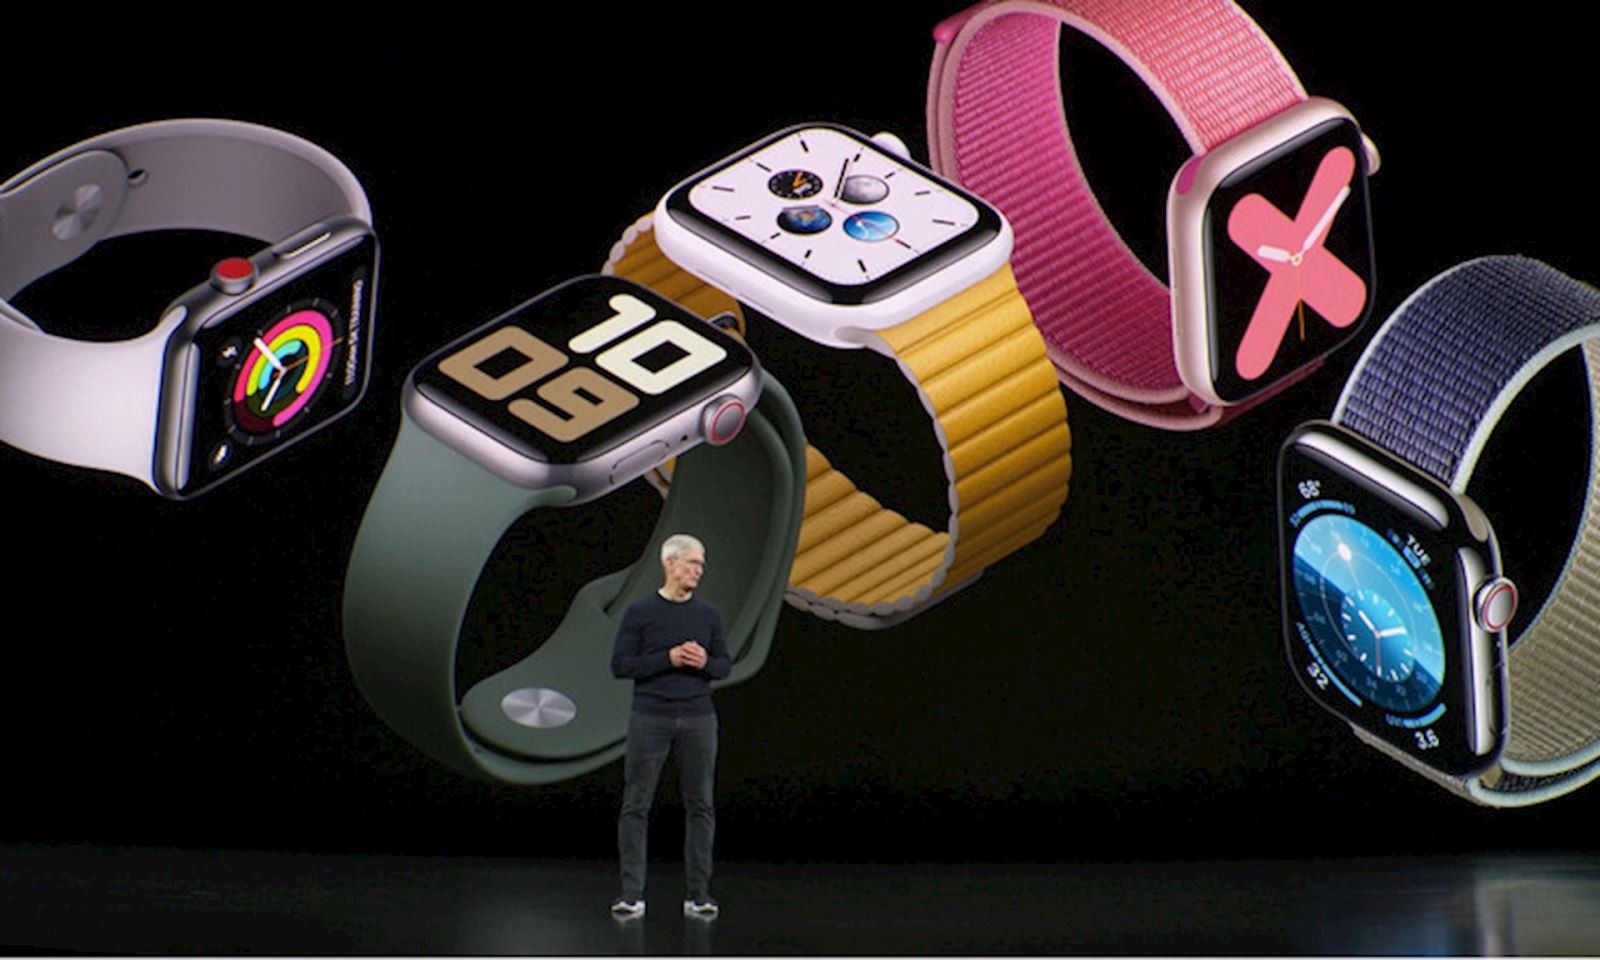 Tổng hợp thông tin về Apple Watch Series 6